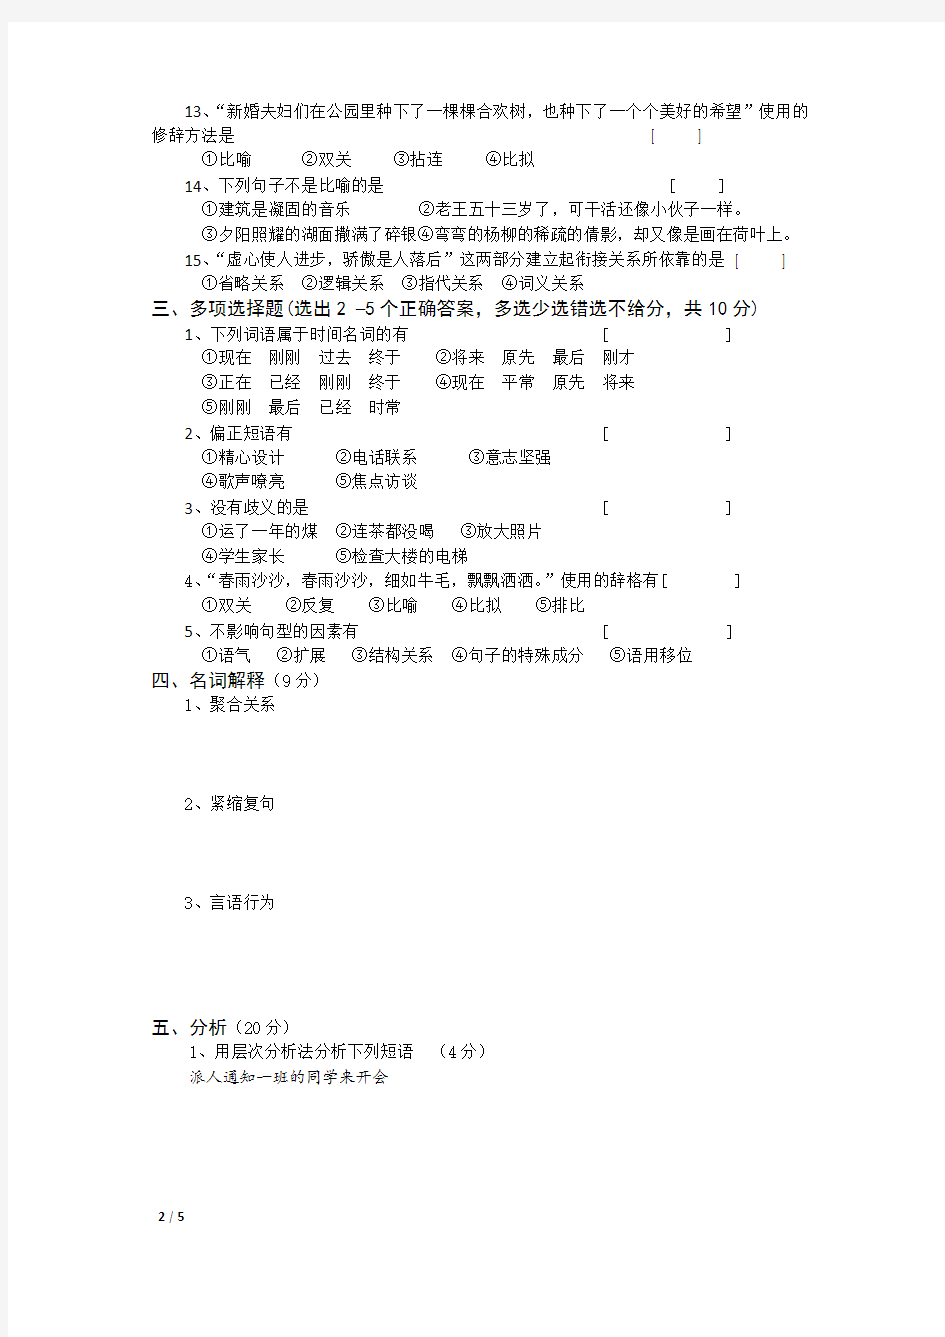 2018年秋河北师范大学现代汉语考试题考试卷及答案解析(一)【最新版】(002)